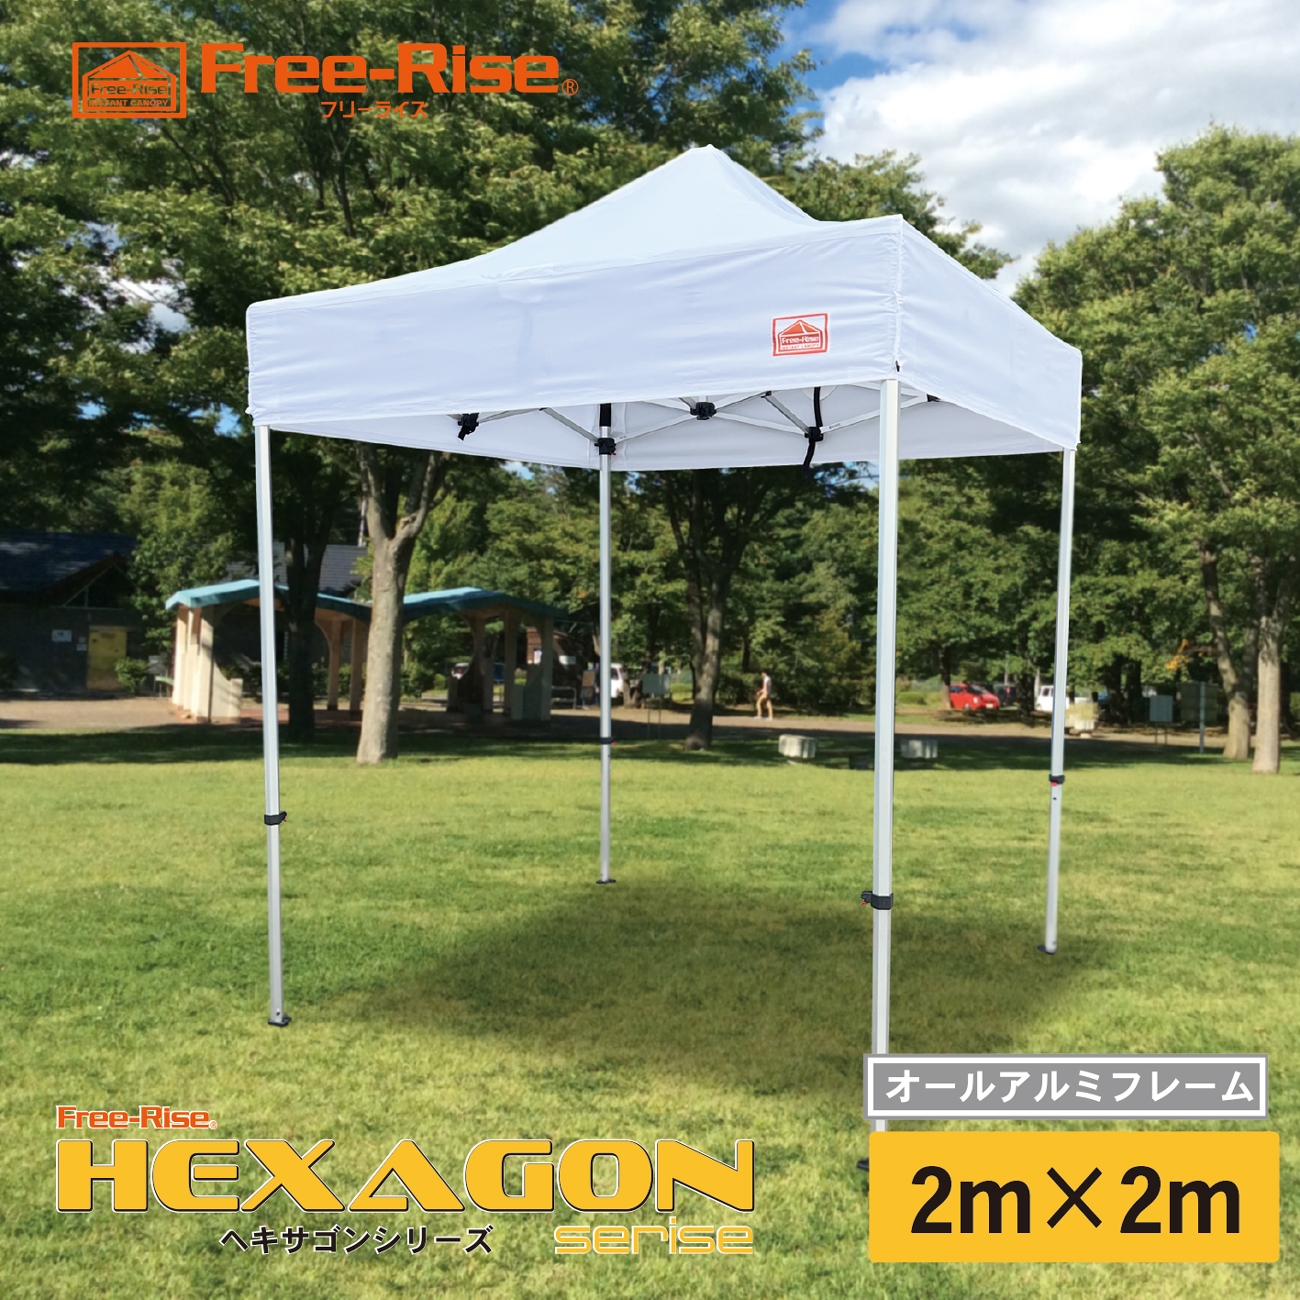 低価格の イベント用テント ワンタッチテント イベント テント フリーライズ HEXAGON ヘキサゴン シリーズ アルミフレーム 3m×4.5m  カラー